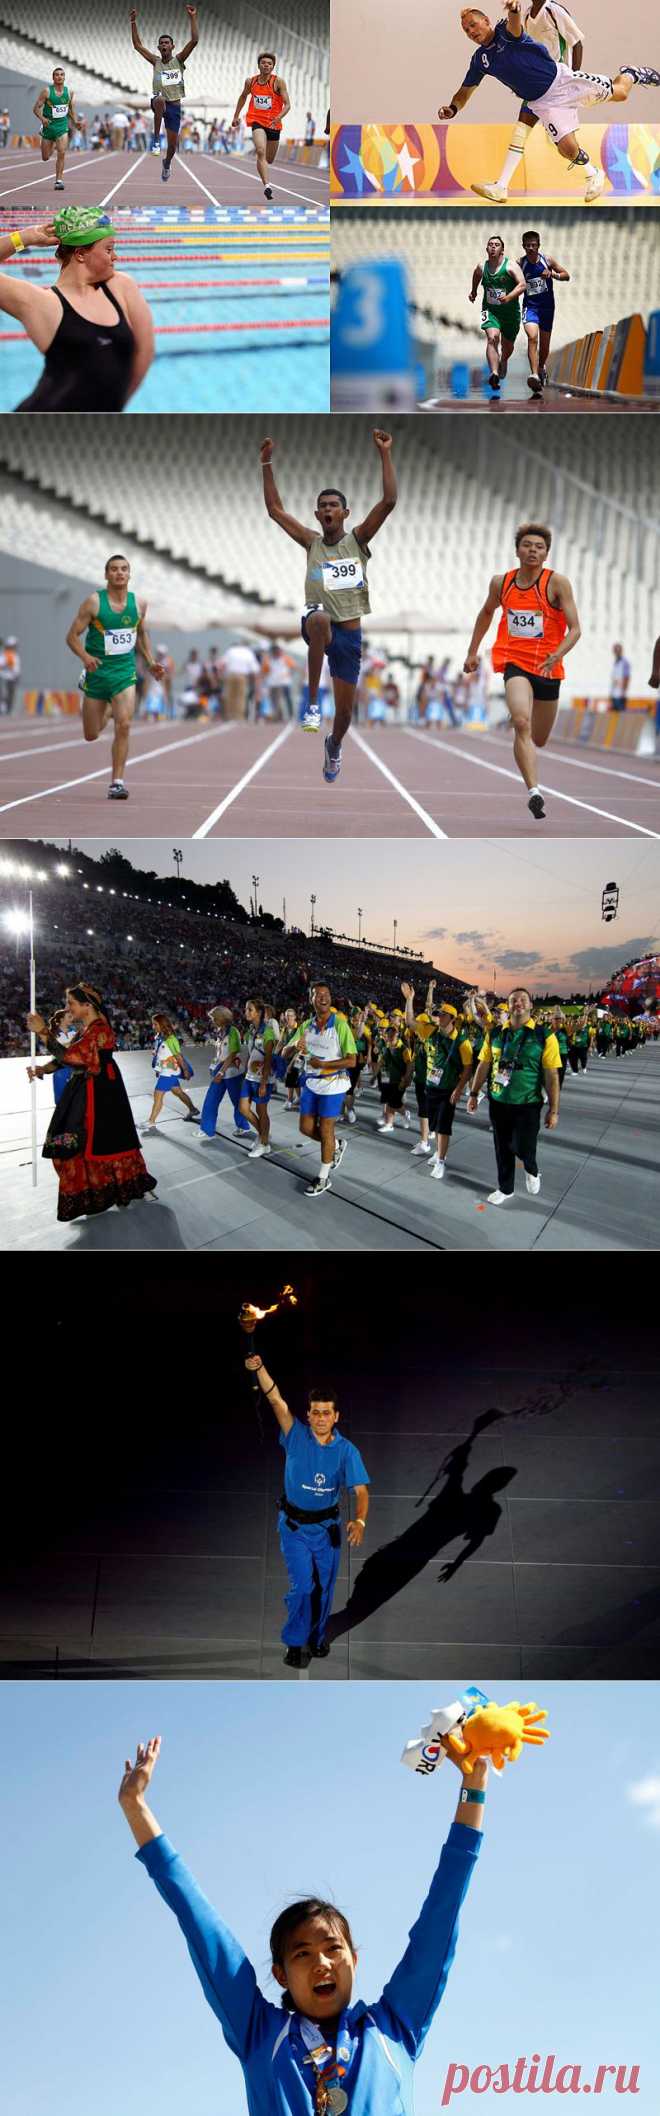 Олимпиада для лиц с умственными отклонениями: Special Olympics • НОВОСТИ В ФОТОГРАФИЯХ